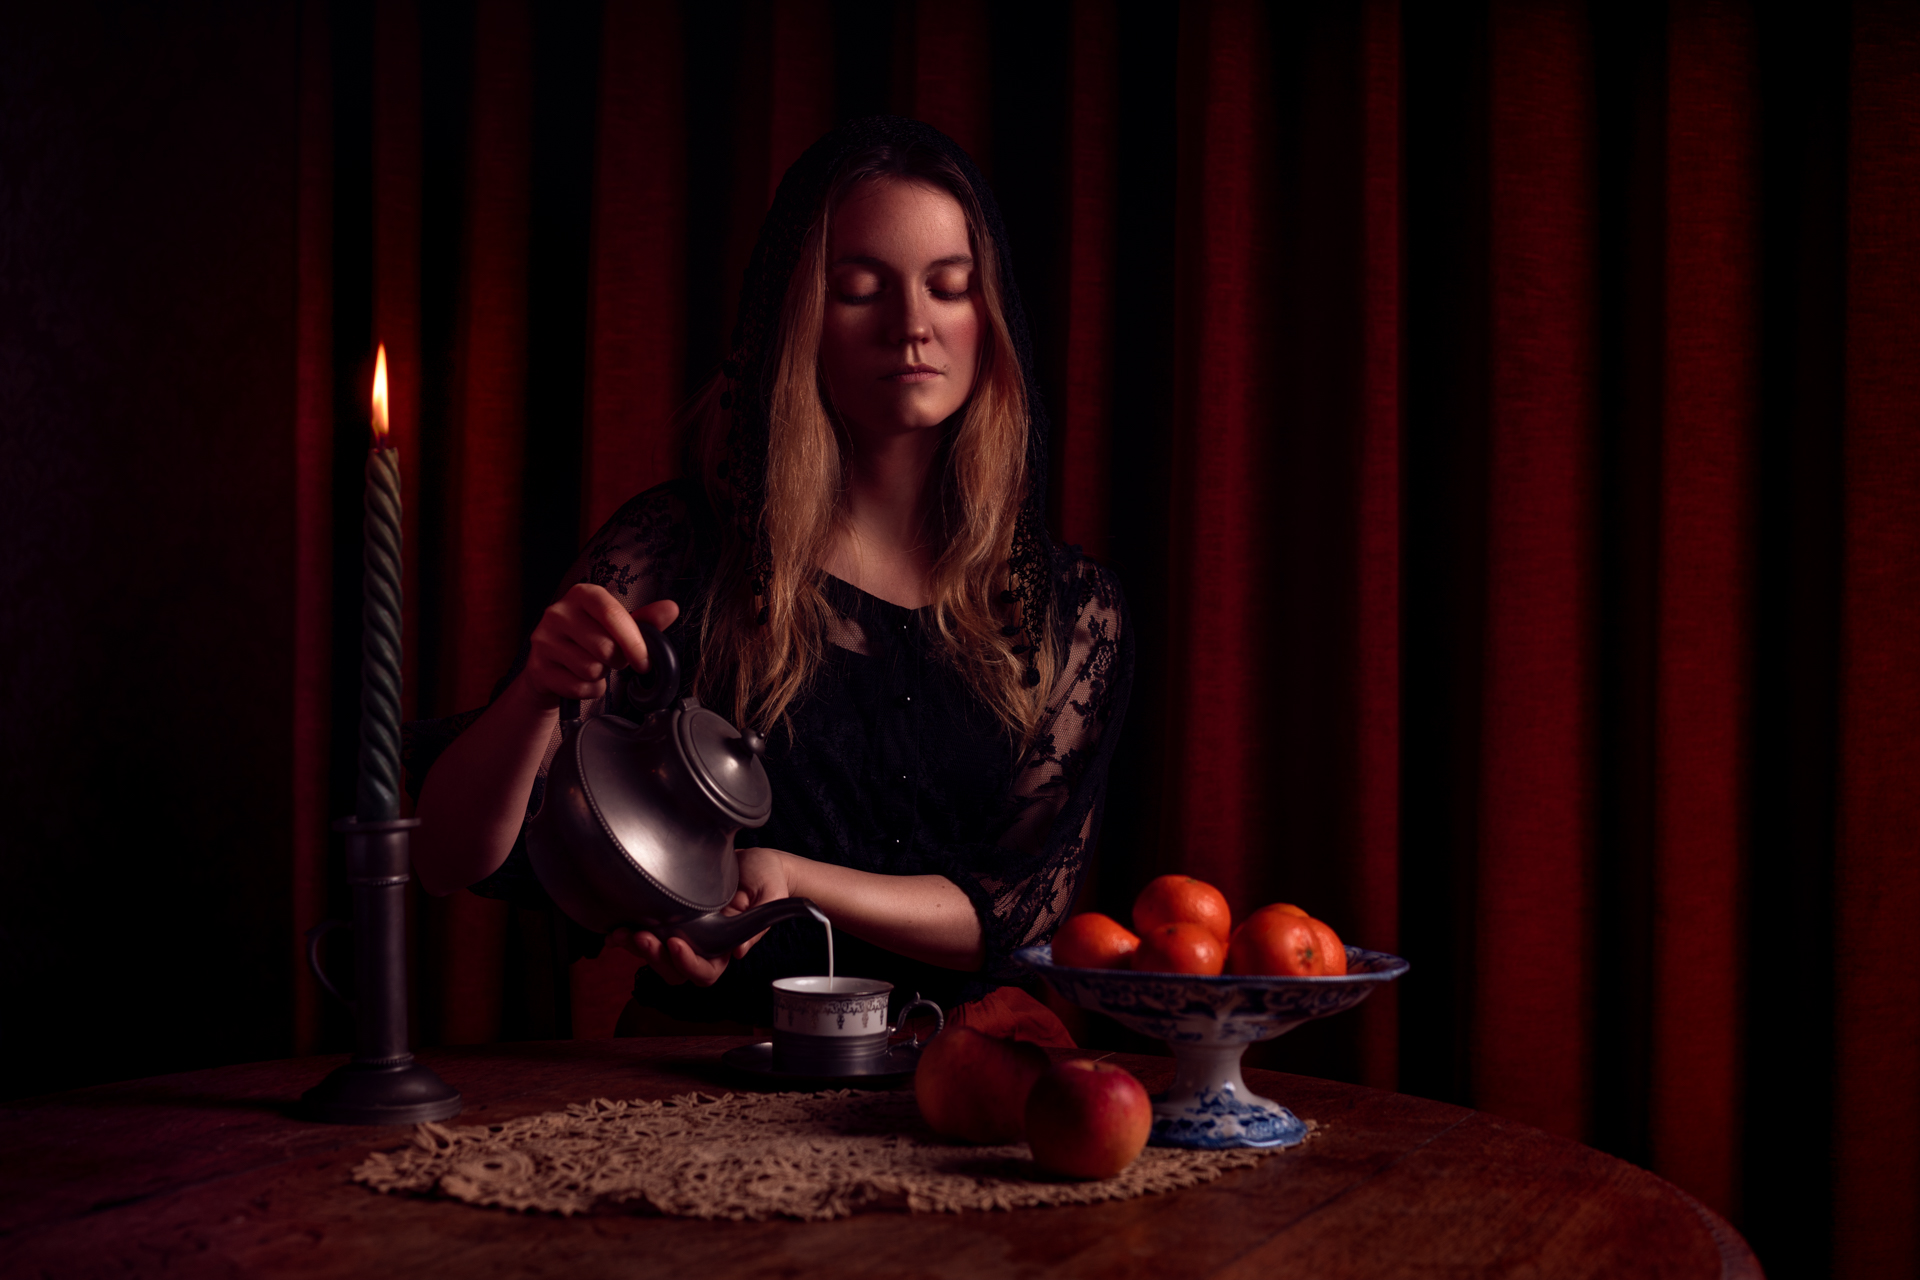 Photographie portrait à la bougie d'une femme versant du lait dans une petite tasse. Une coupe de fruits est disposée sur la table.